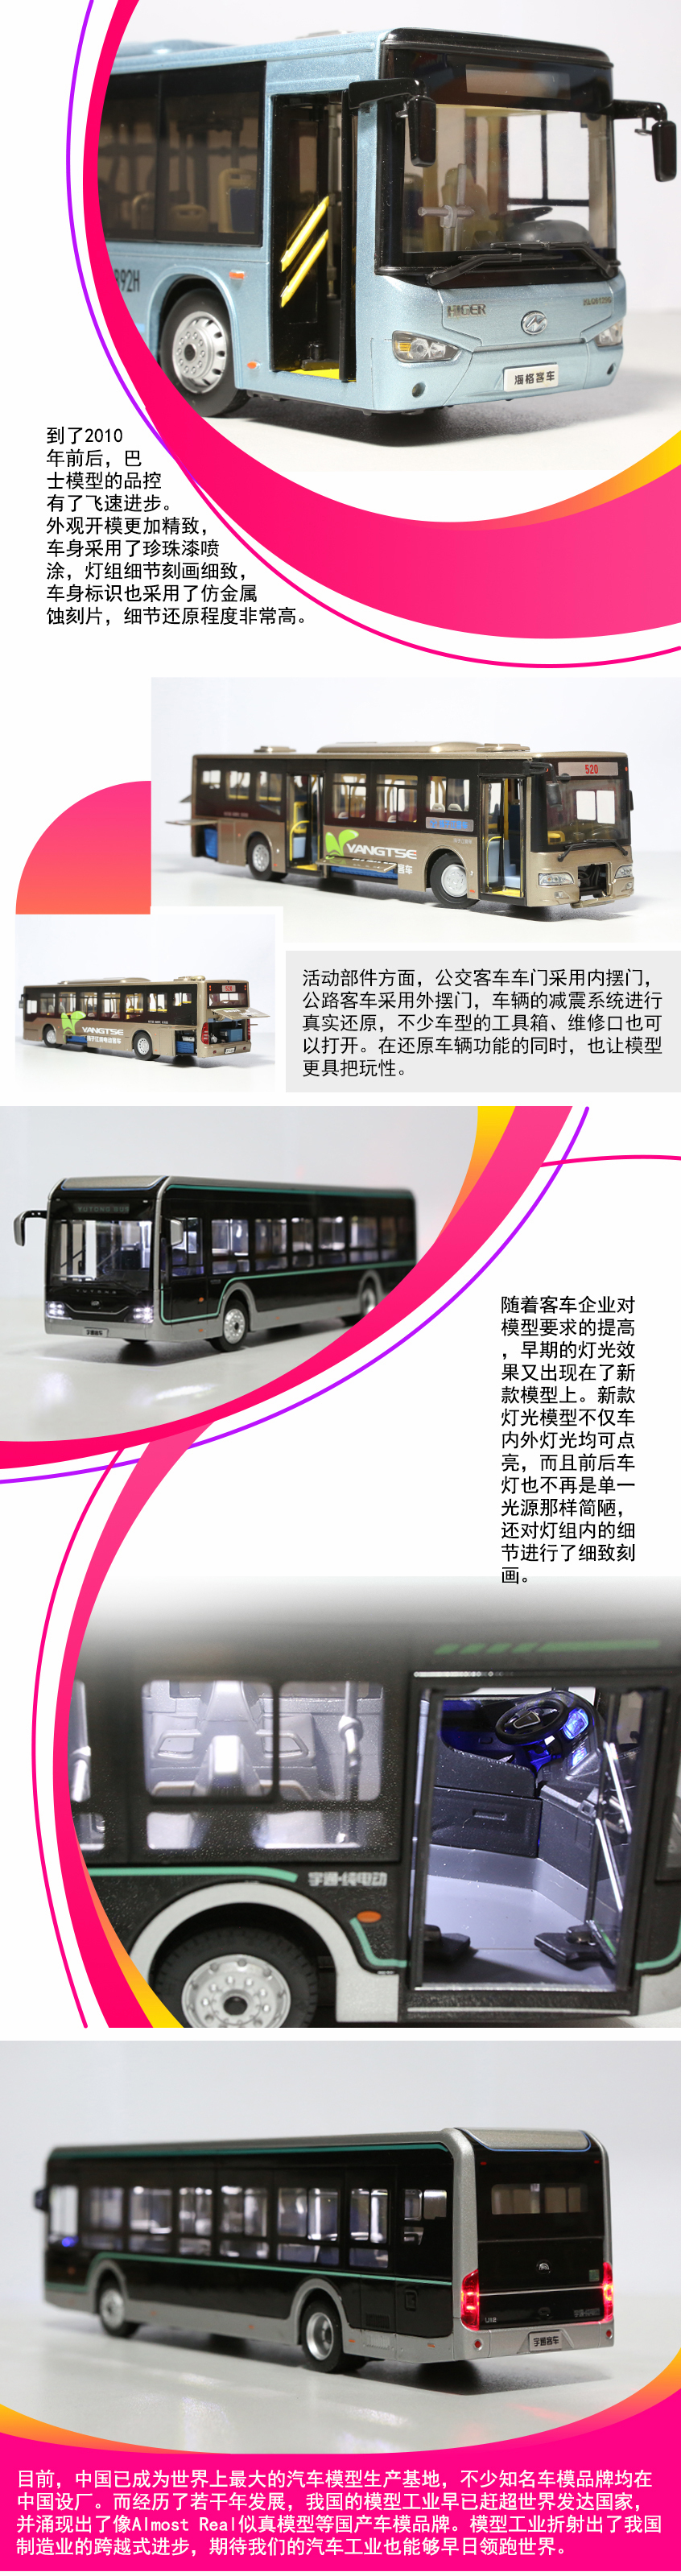 新中国成立70周年 巴士模型的历史发展